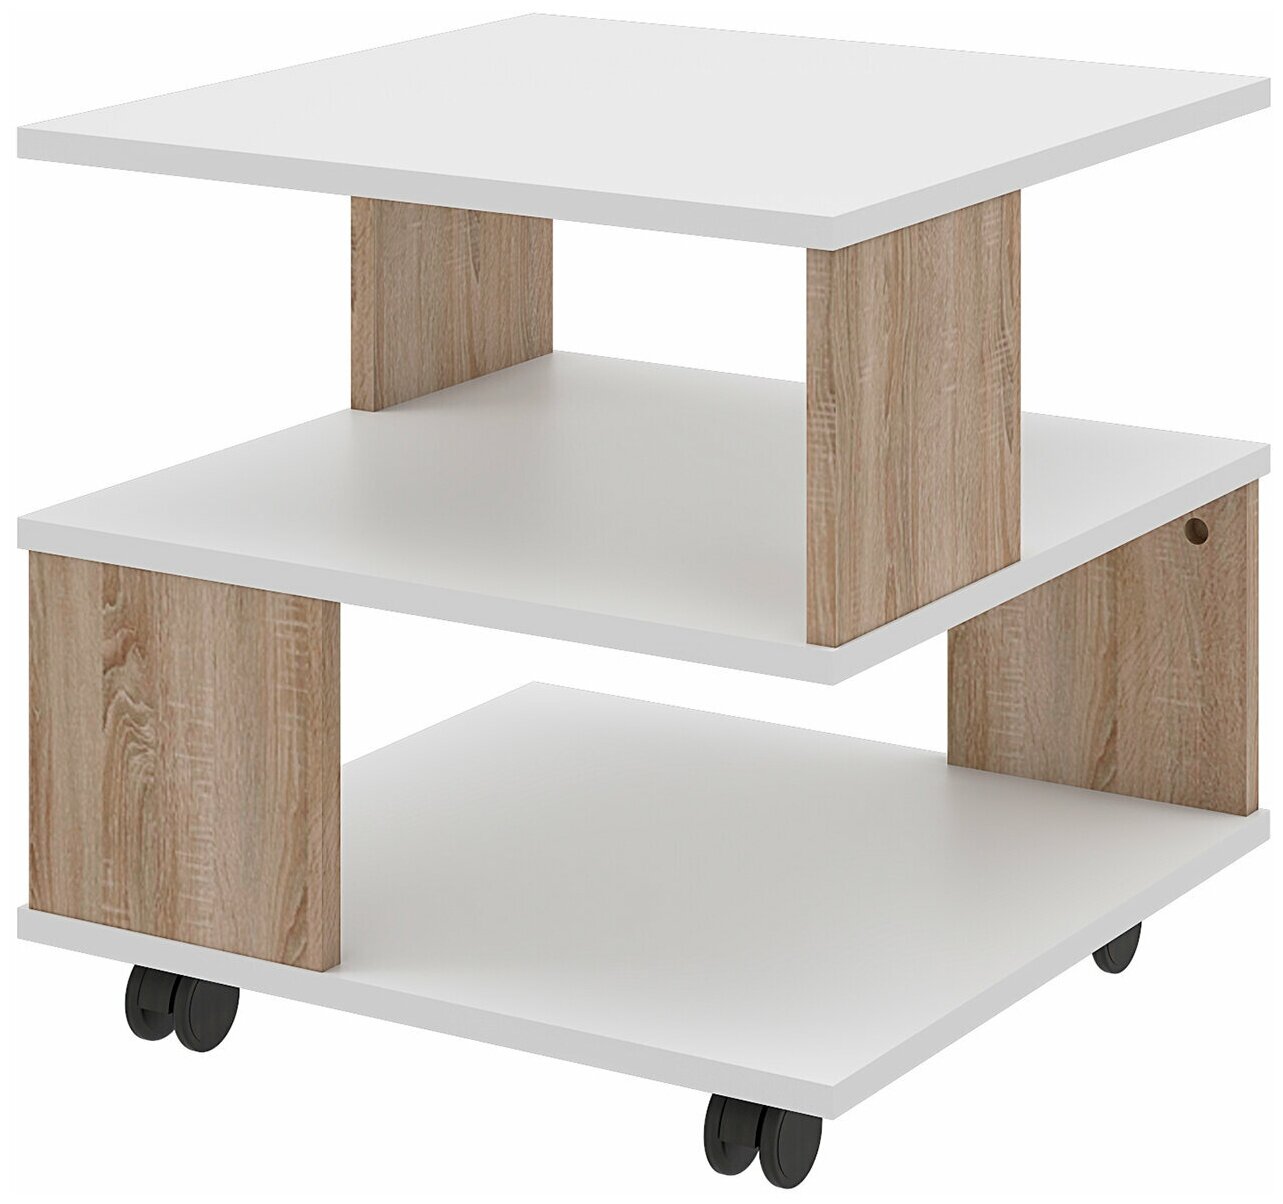 Журнальный столик, сервировочный стол Beneli алекс, квадратный, Дуб сонома/Белый, 49,5х49,5х48,3 см, 1 шт.